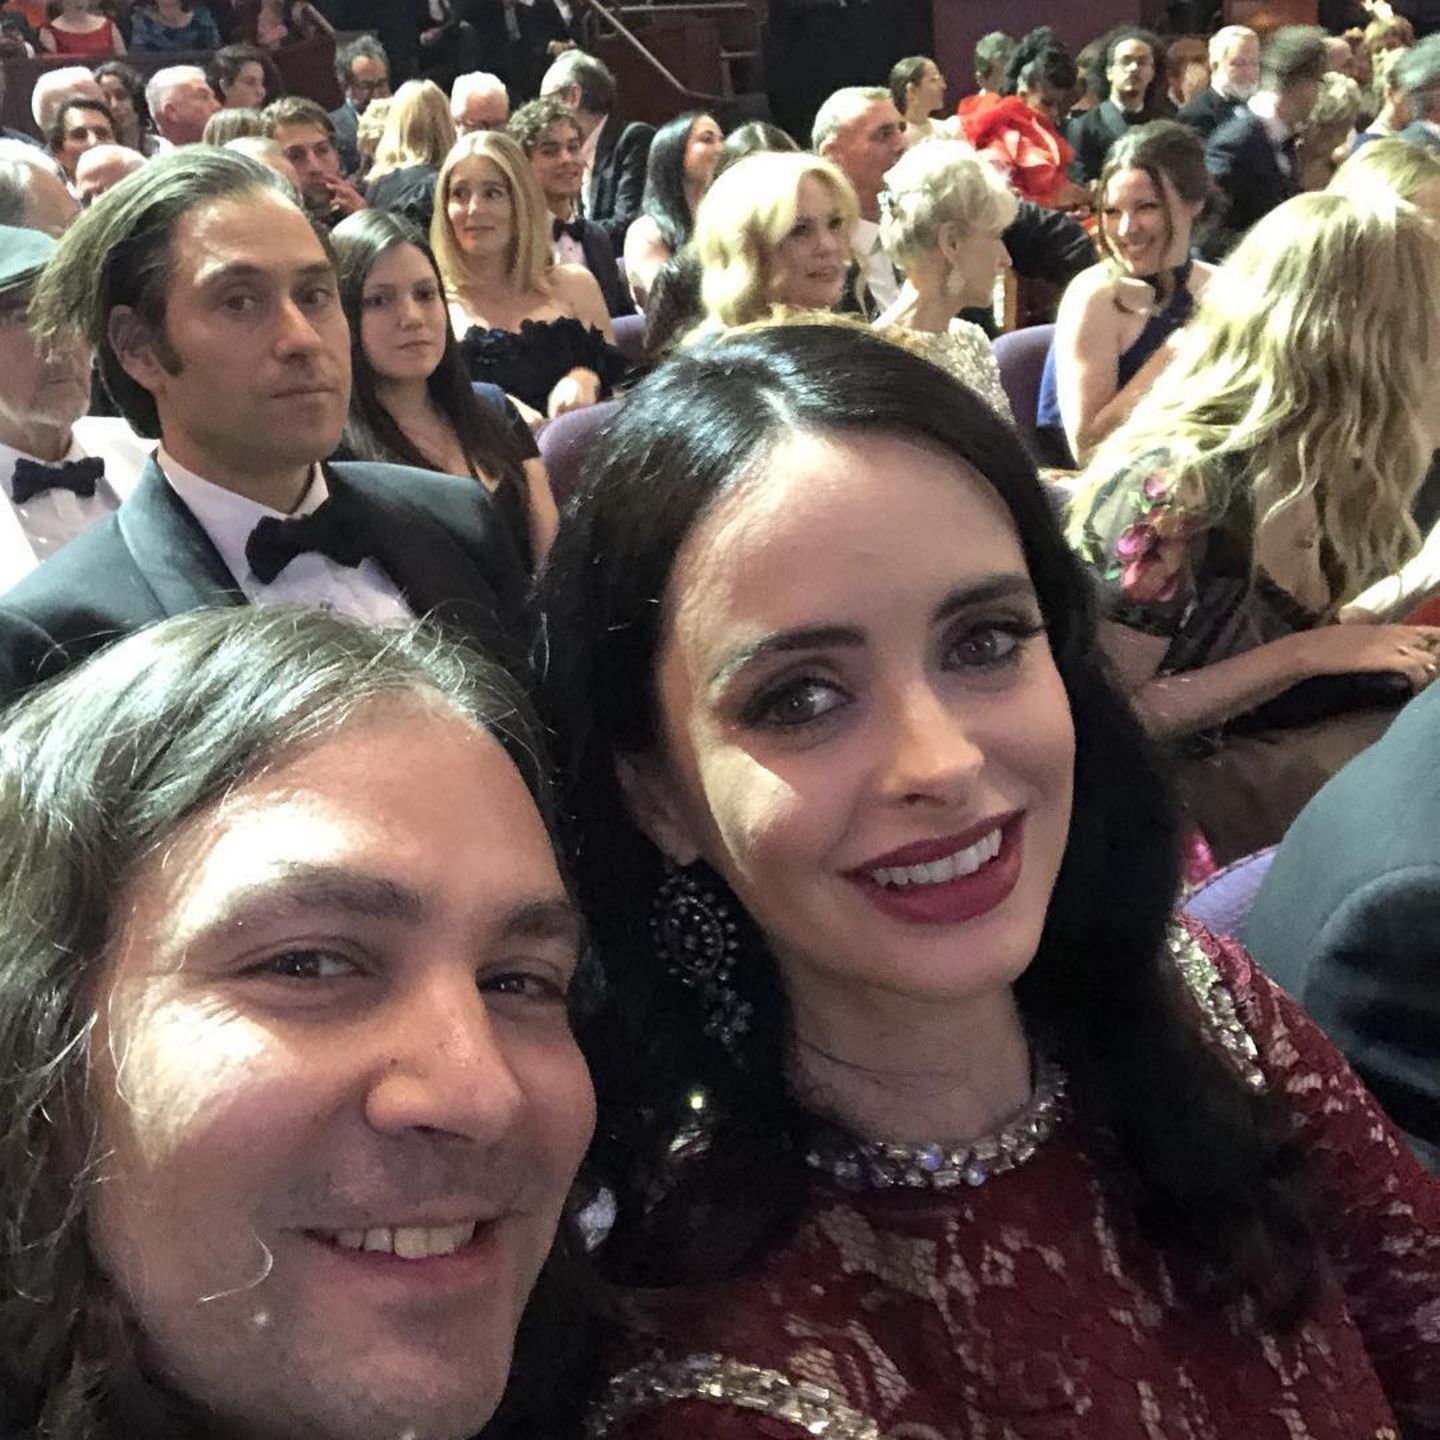 Krysten Ritter postet ein Selfie aus dem Publikumsbereich. "Oscars!!!", postet die Schauspielerin dazu.